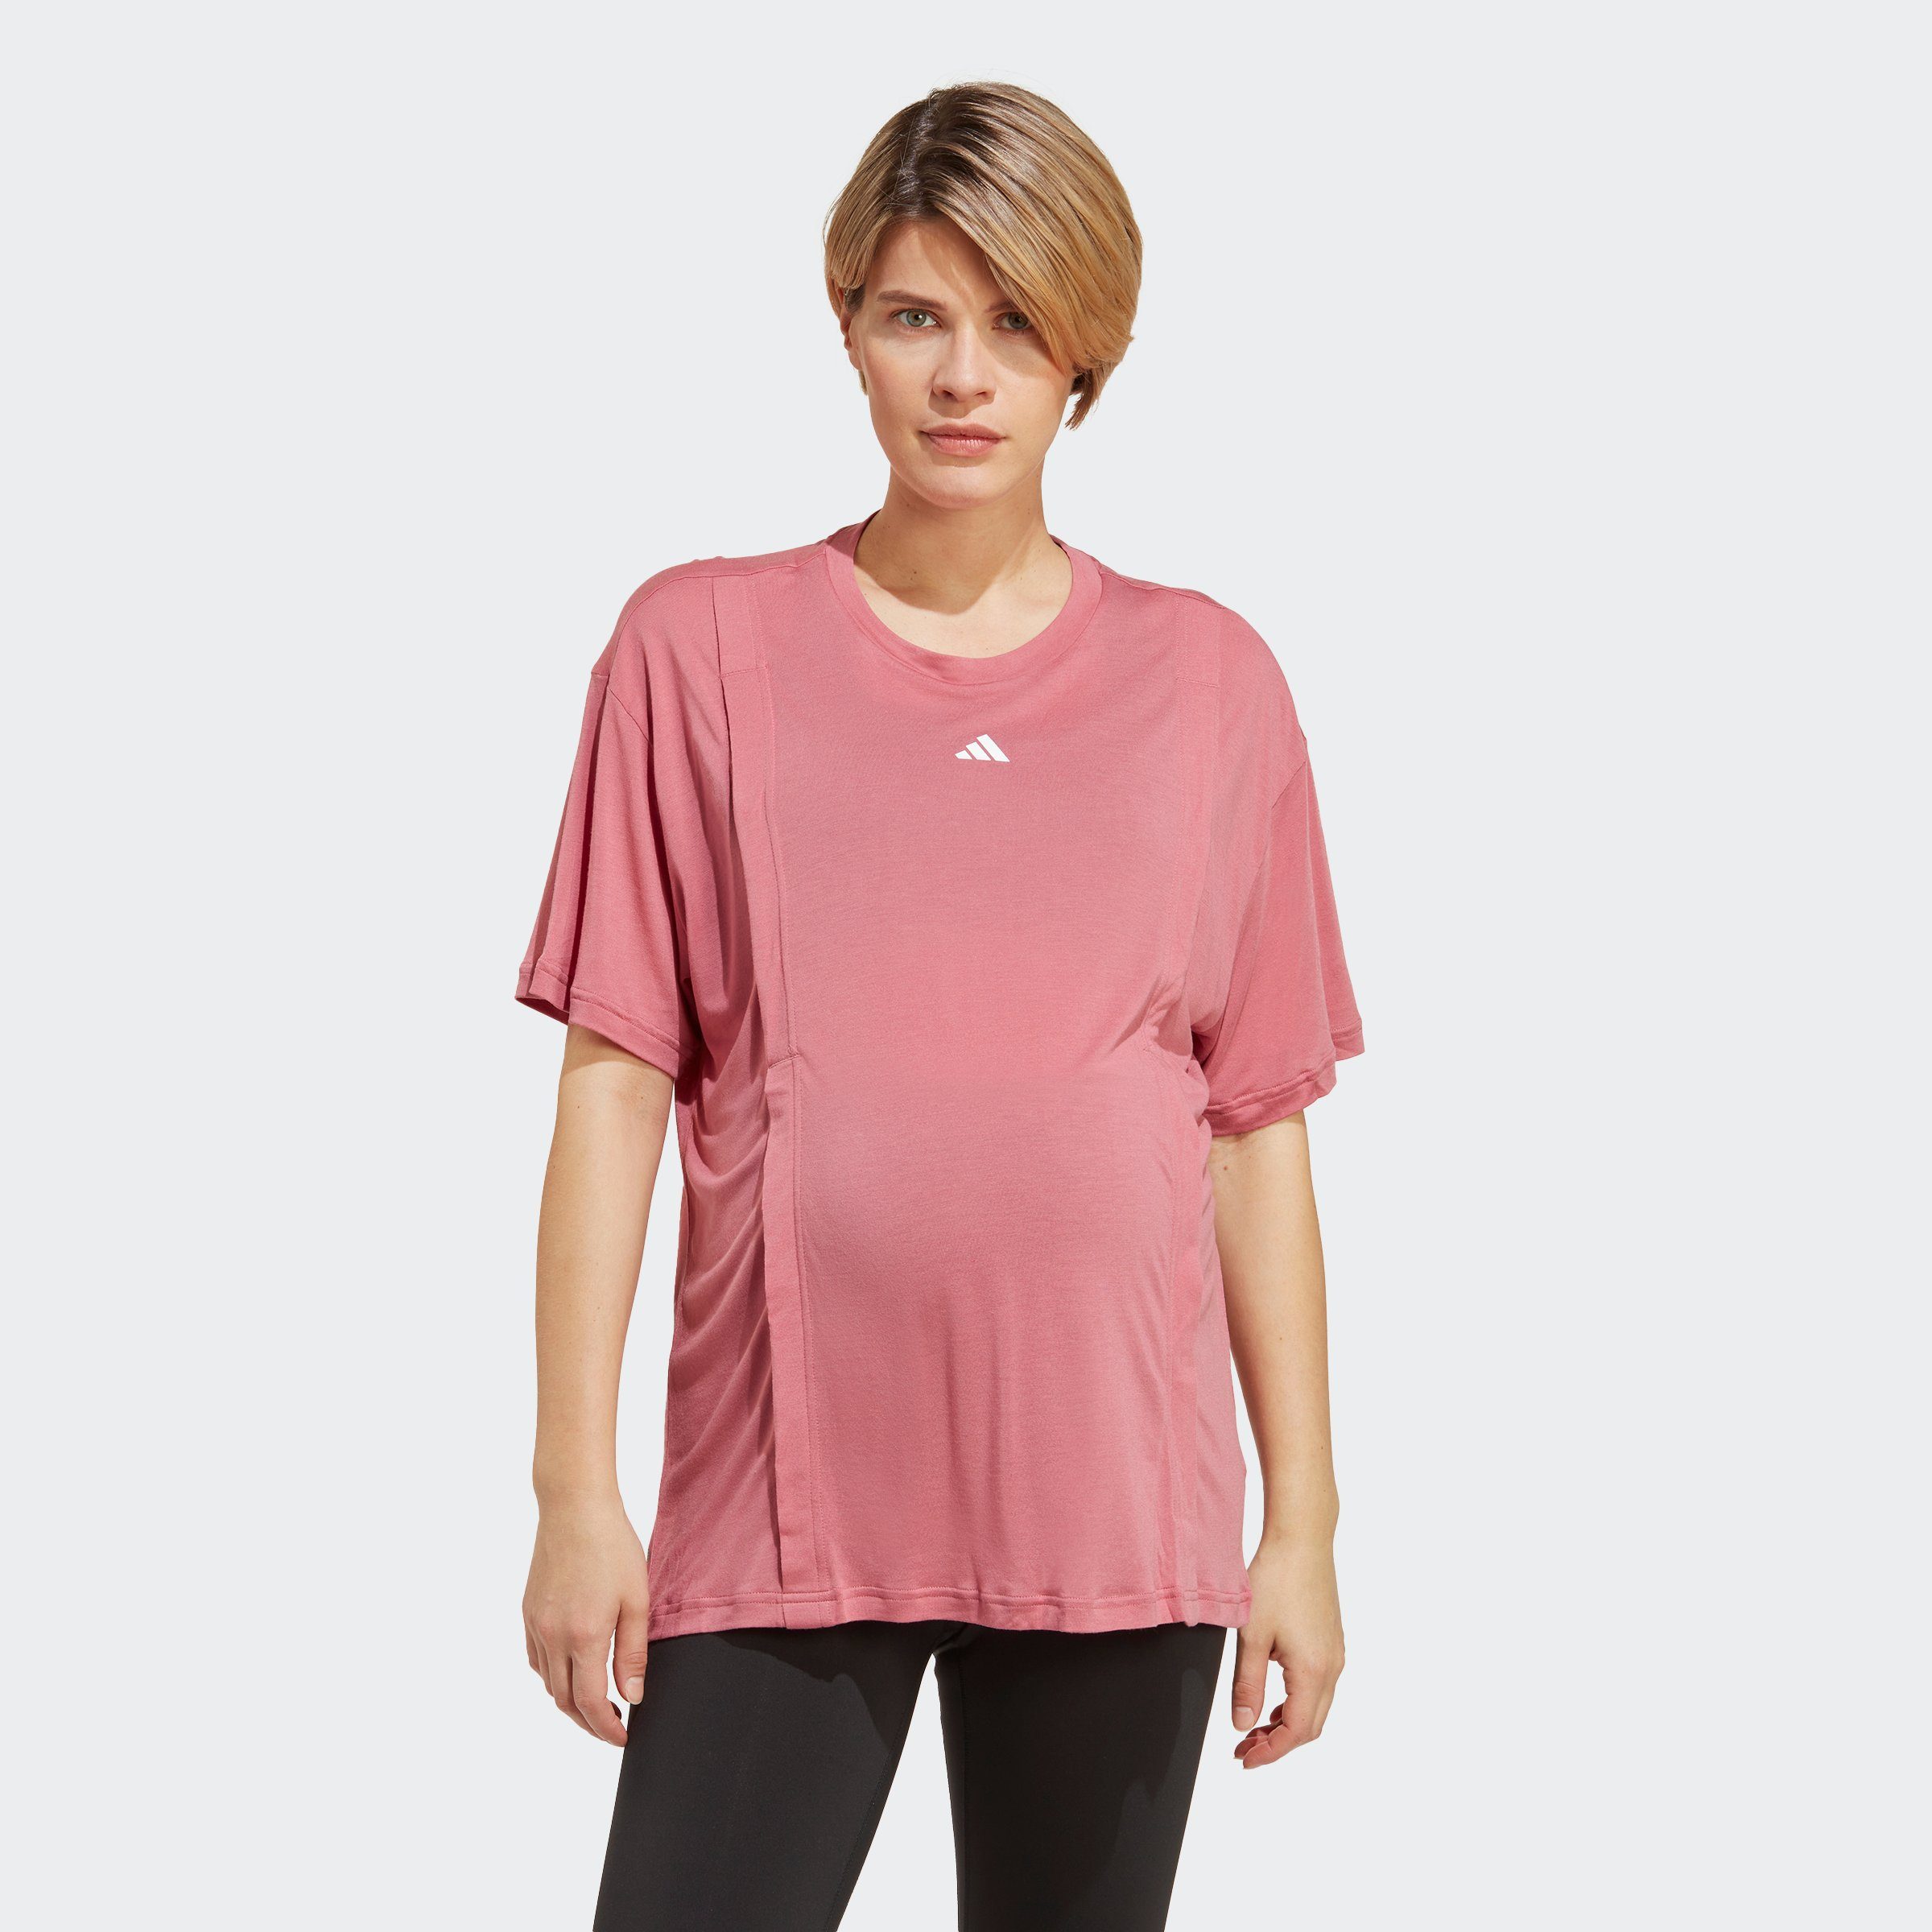 Rosa adidas Damen T-Shirts online kaufen | OTTO